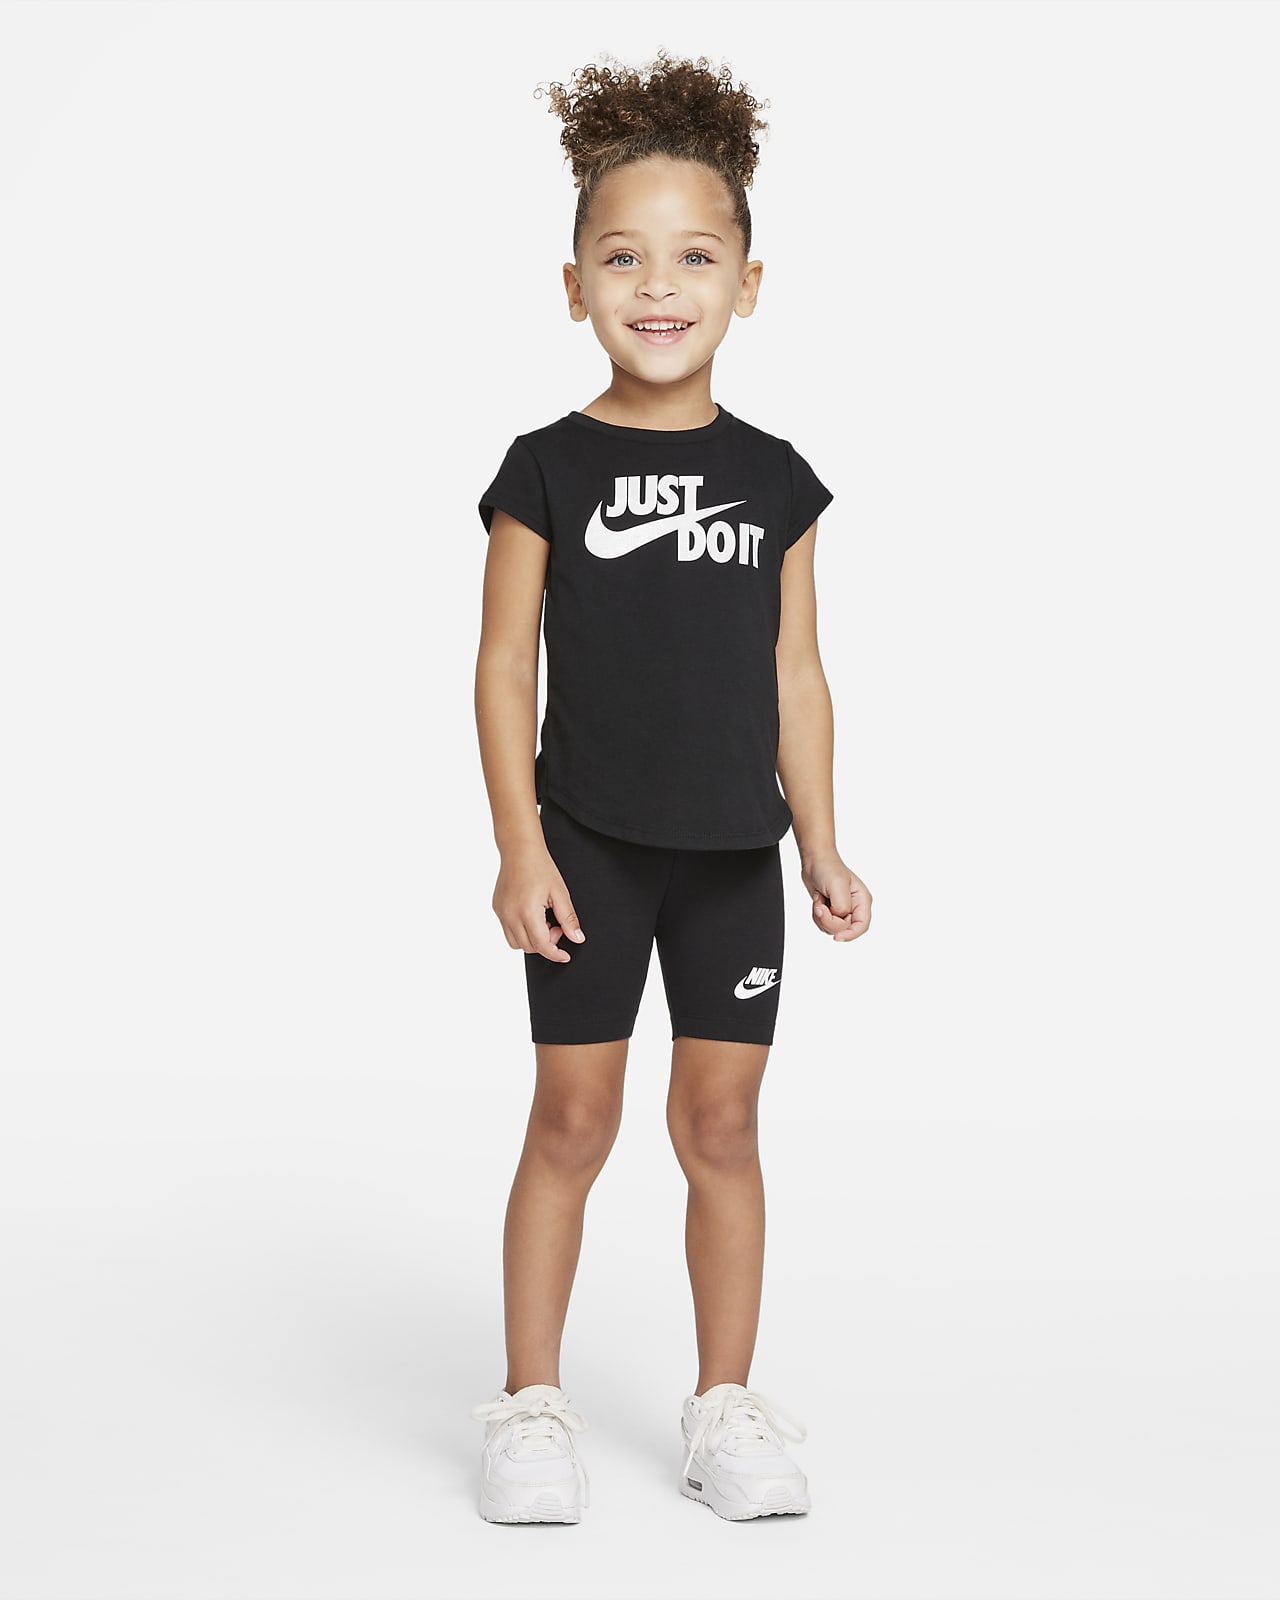 Nike Toddler Bike Shorts.